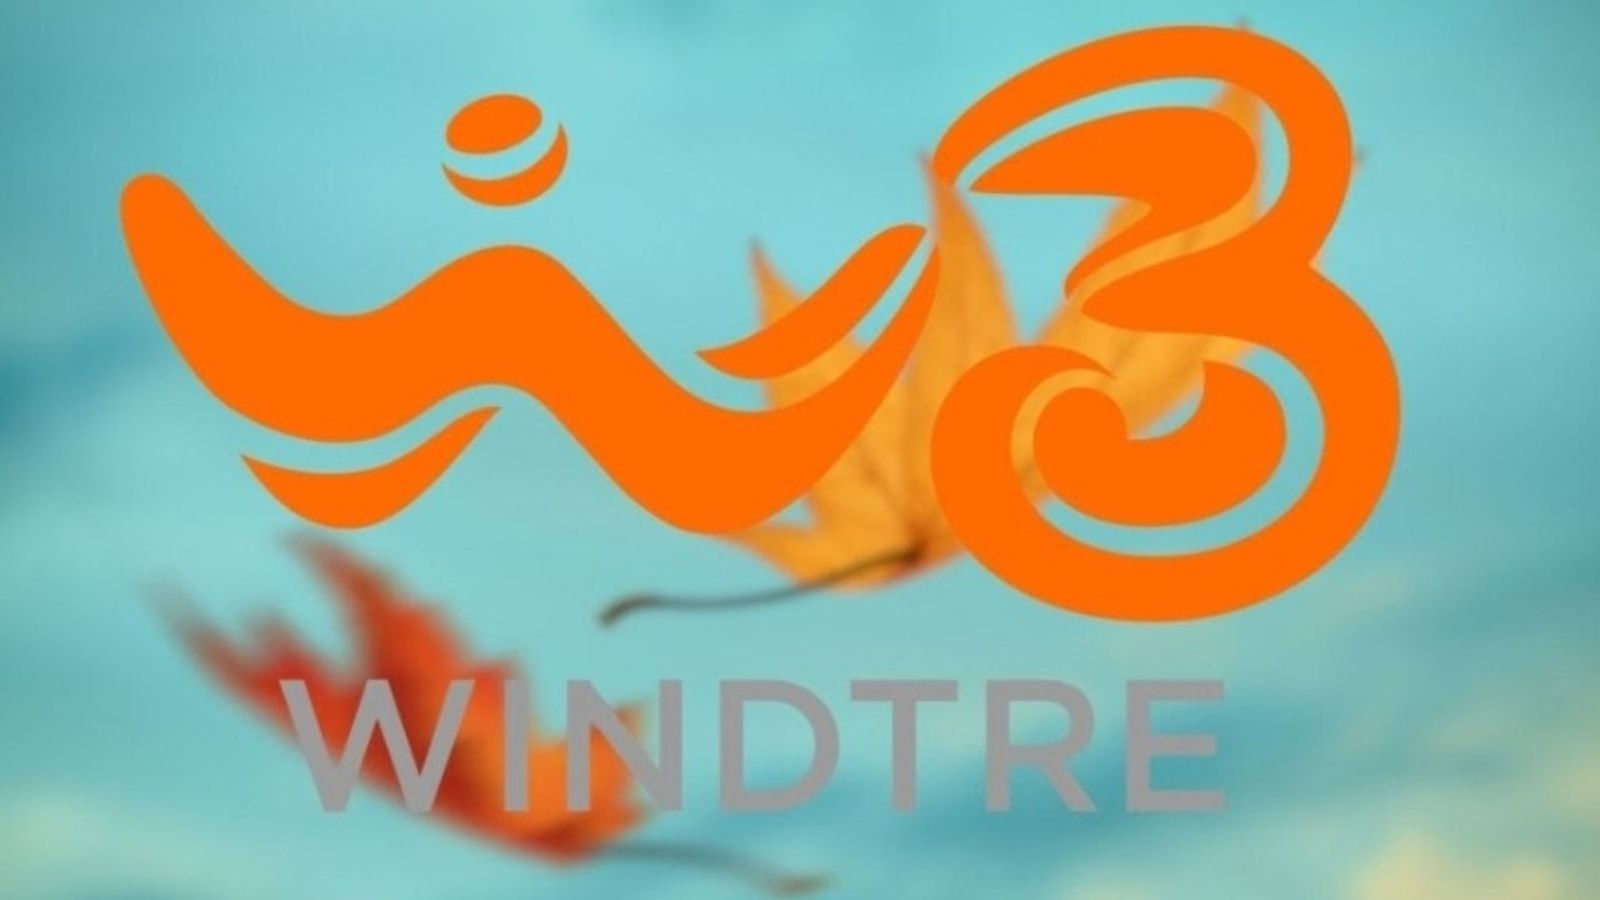 WindTre offerta 200 gb 